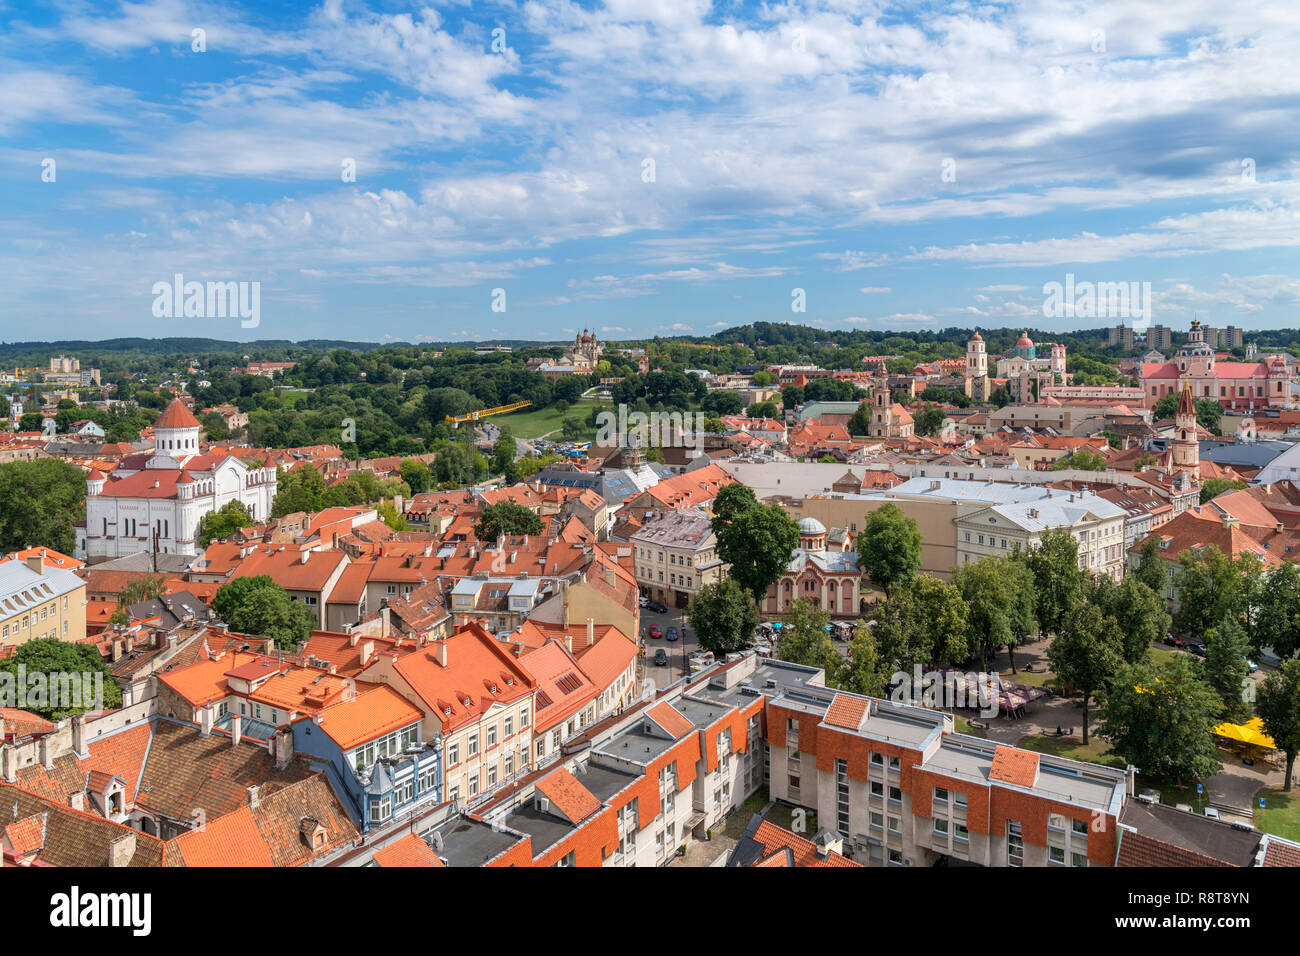 Vue sur la vieille ville de St Johns clocher de l'Église, l'Université de Vilnius, Vilnius, Lituanie Banque D'Images